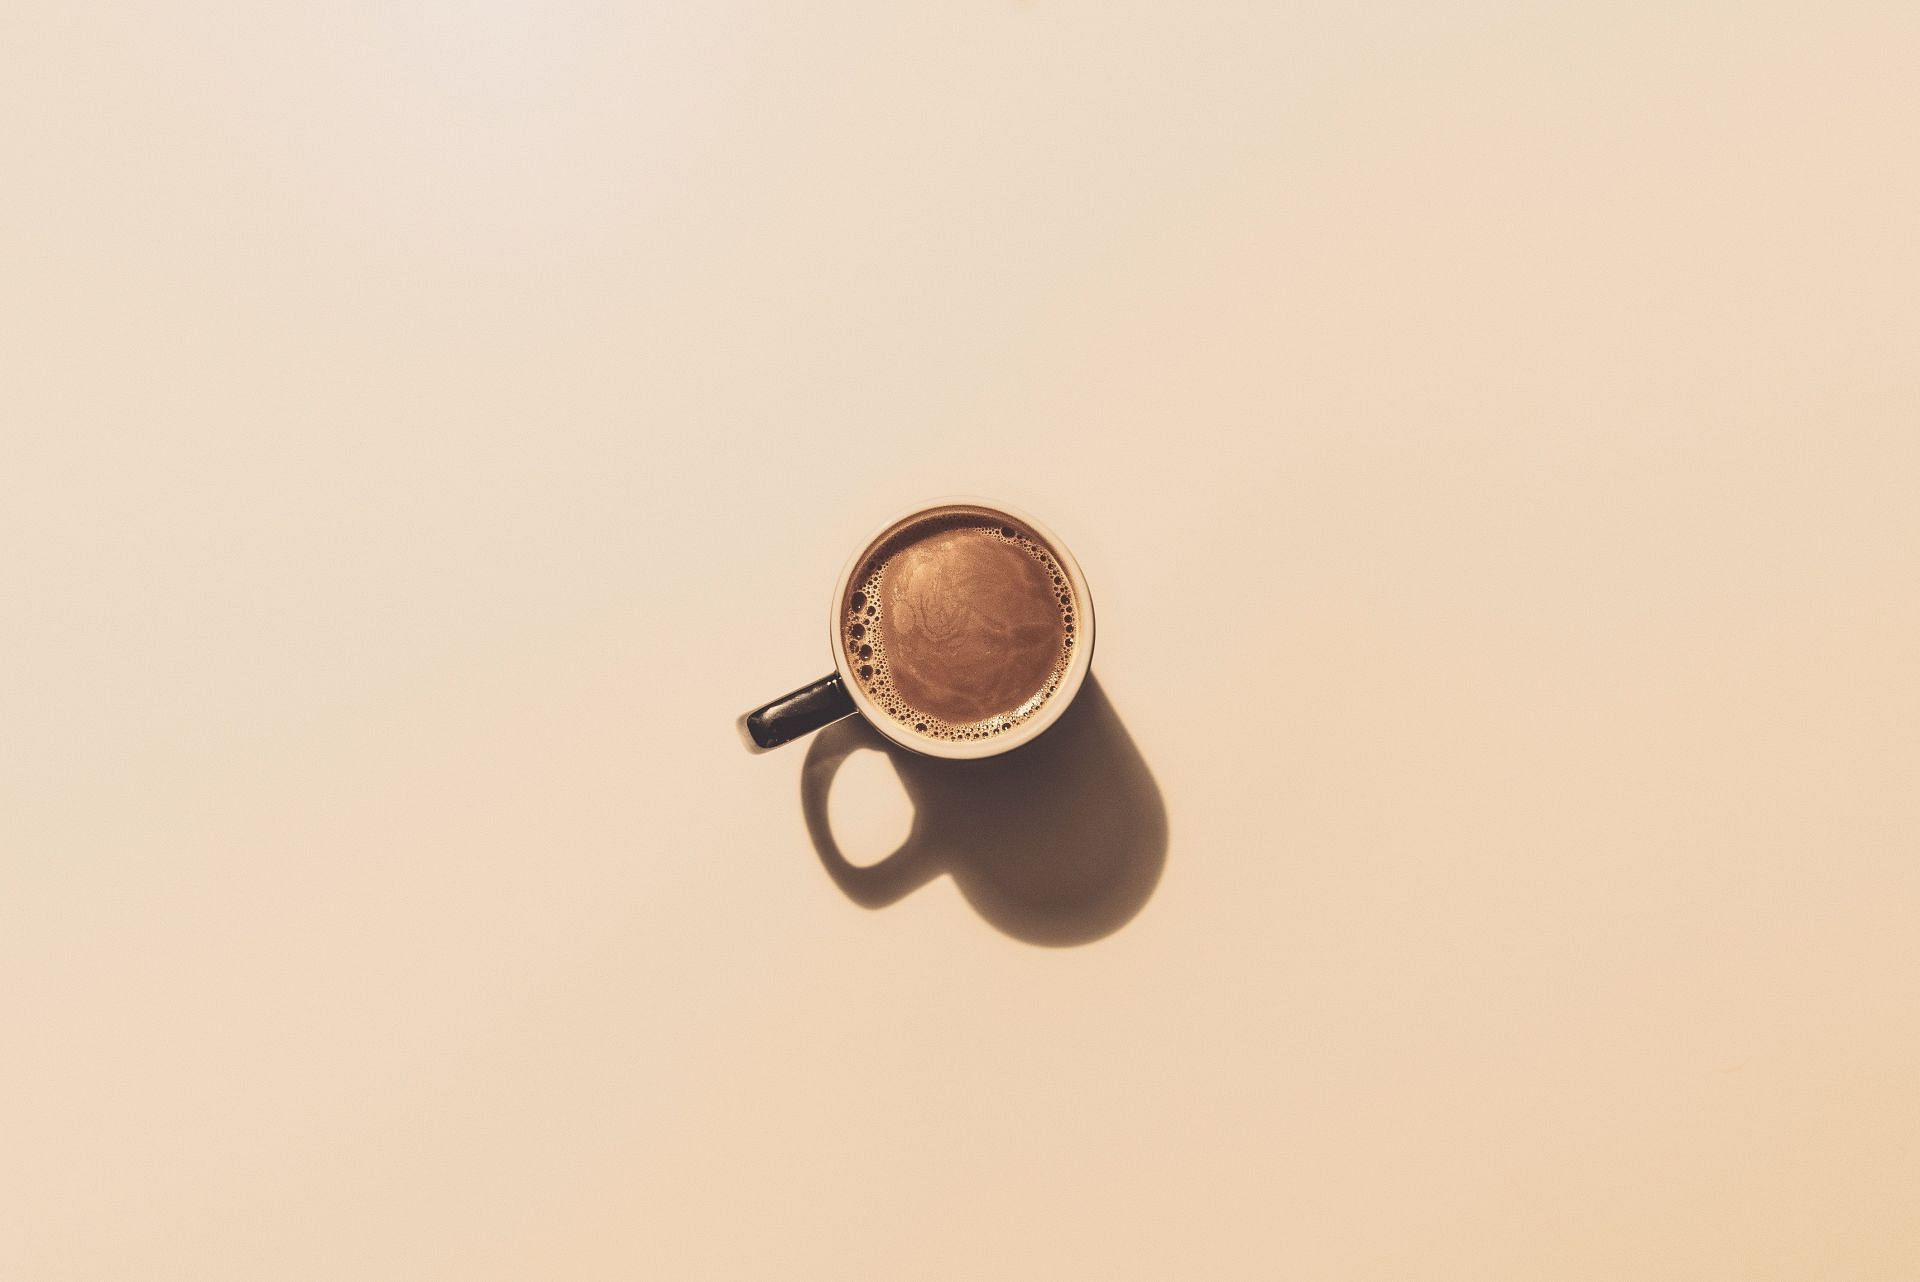 Extremely high in caffeine (Image via Unsplash/Jakub Dziubak)